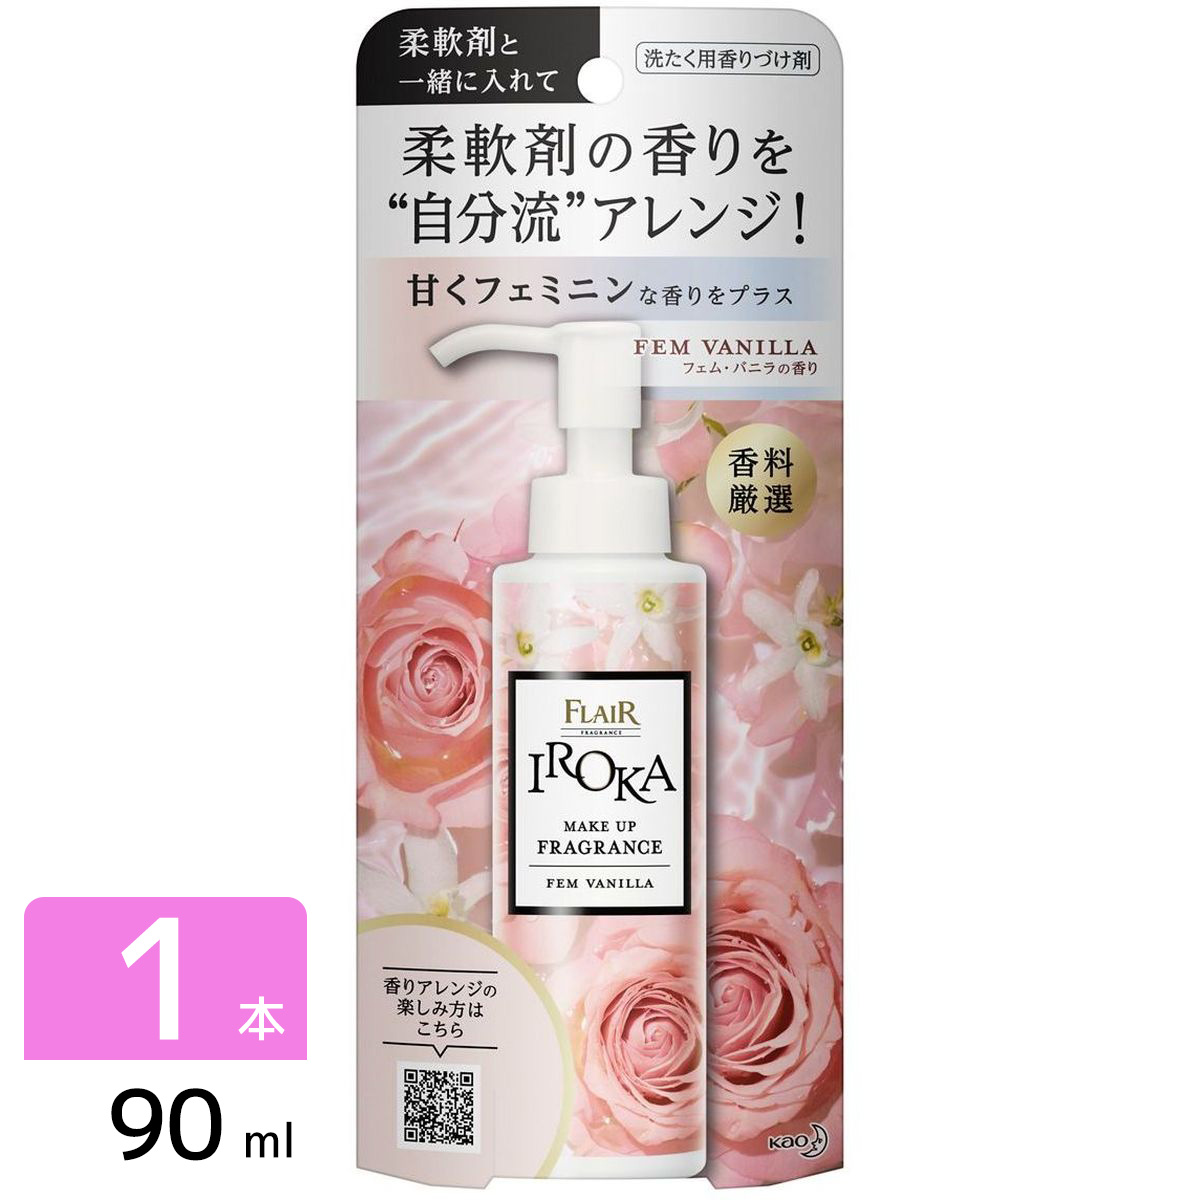 IROKA メイクアップフレグランス 洗たく用香りづけ剤 フェムバニラ 本体 90ml